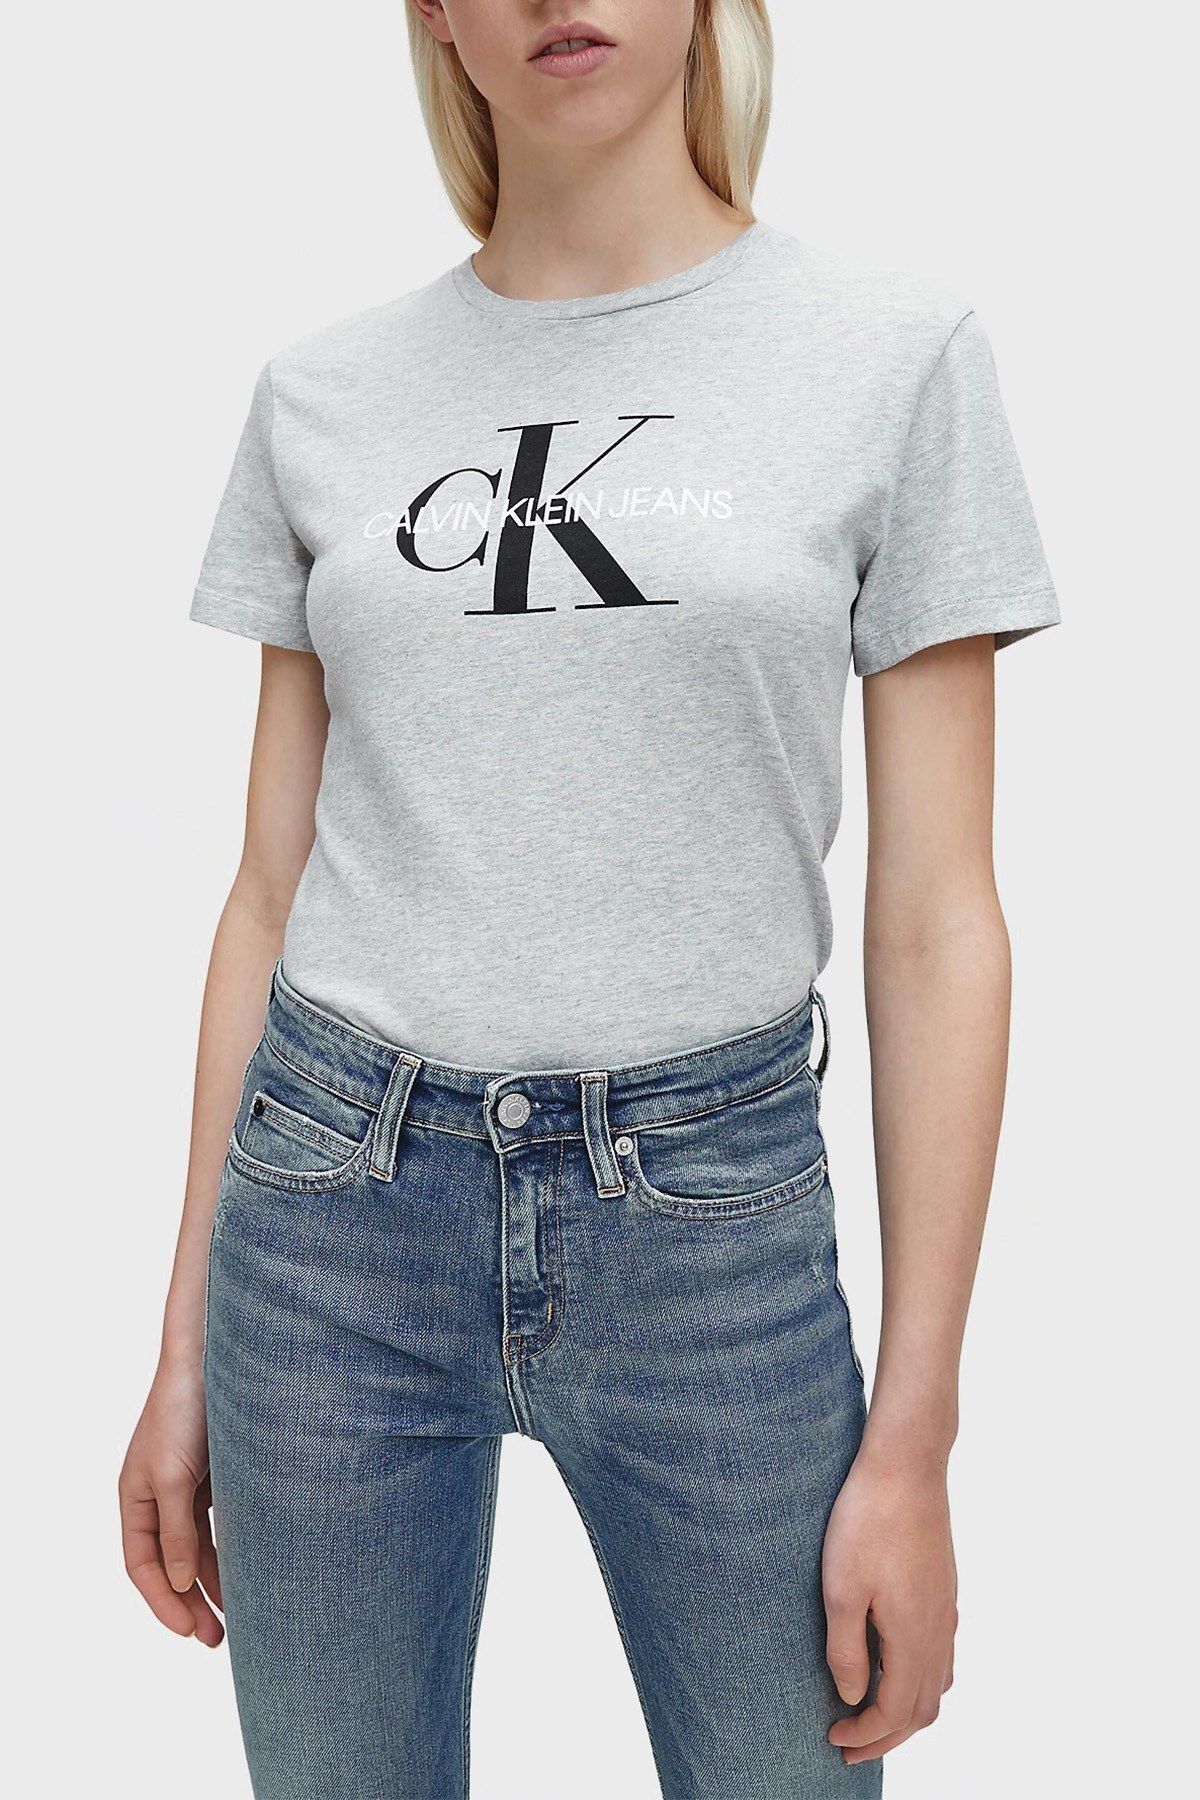 Calvin Klein Logolu % 100 Pamuk Bisiklet Yaka Slim Fit Bayan T Shirt J20J207878 038 GRİ